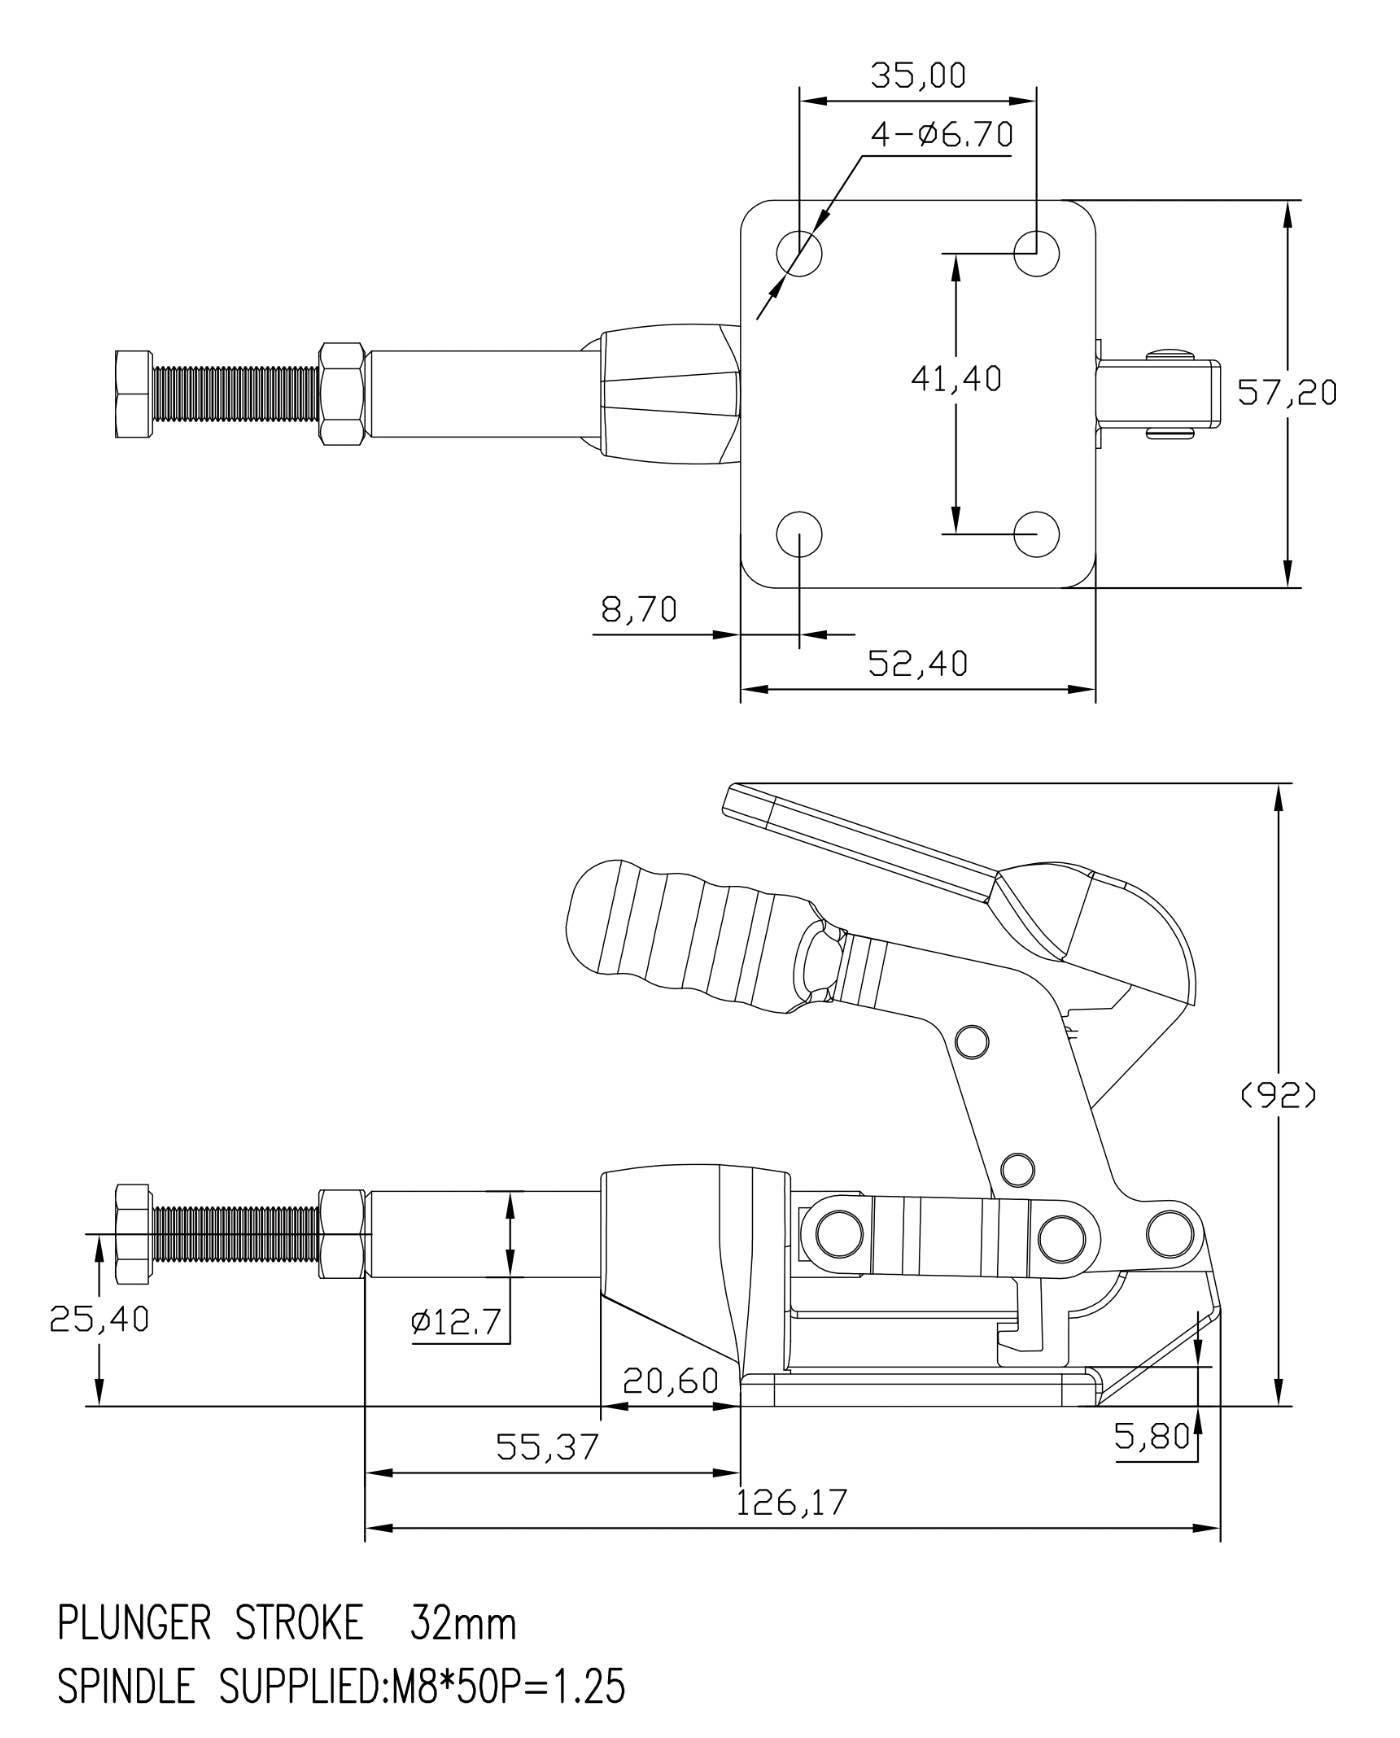 DST-304-CMT Technische Zeichnung Schubstangenspanner mit Verriegelung und Gusskoerper